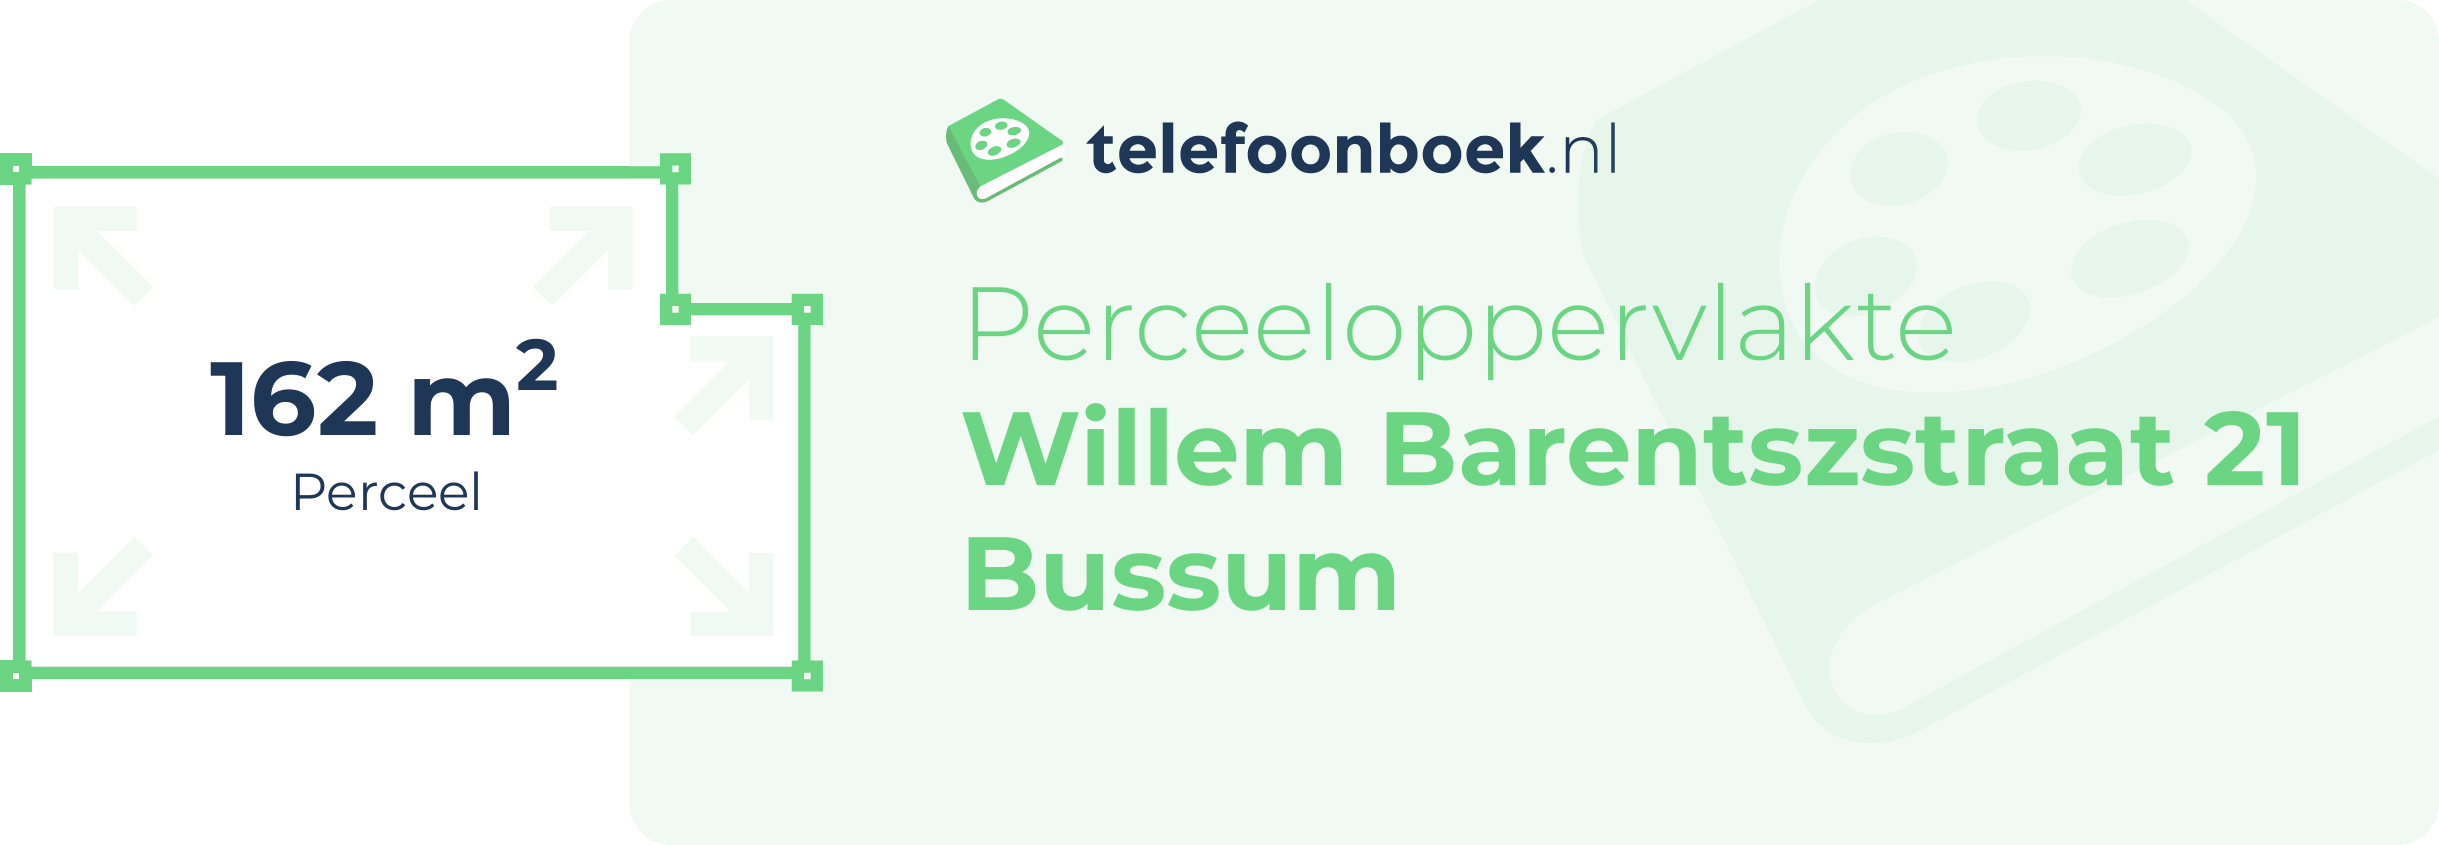 Perceeloppervlakte Willem Barentszstraat 21 Bussum